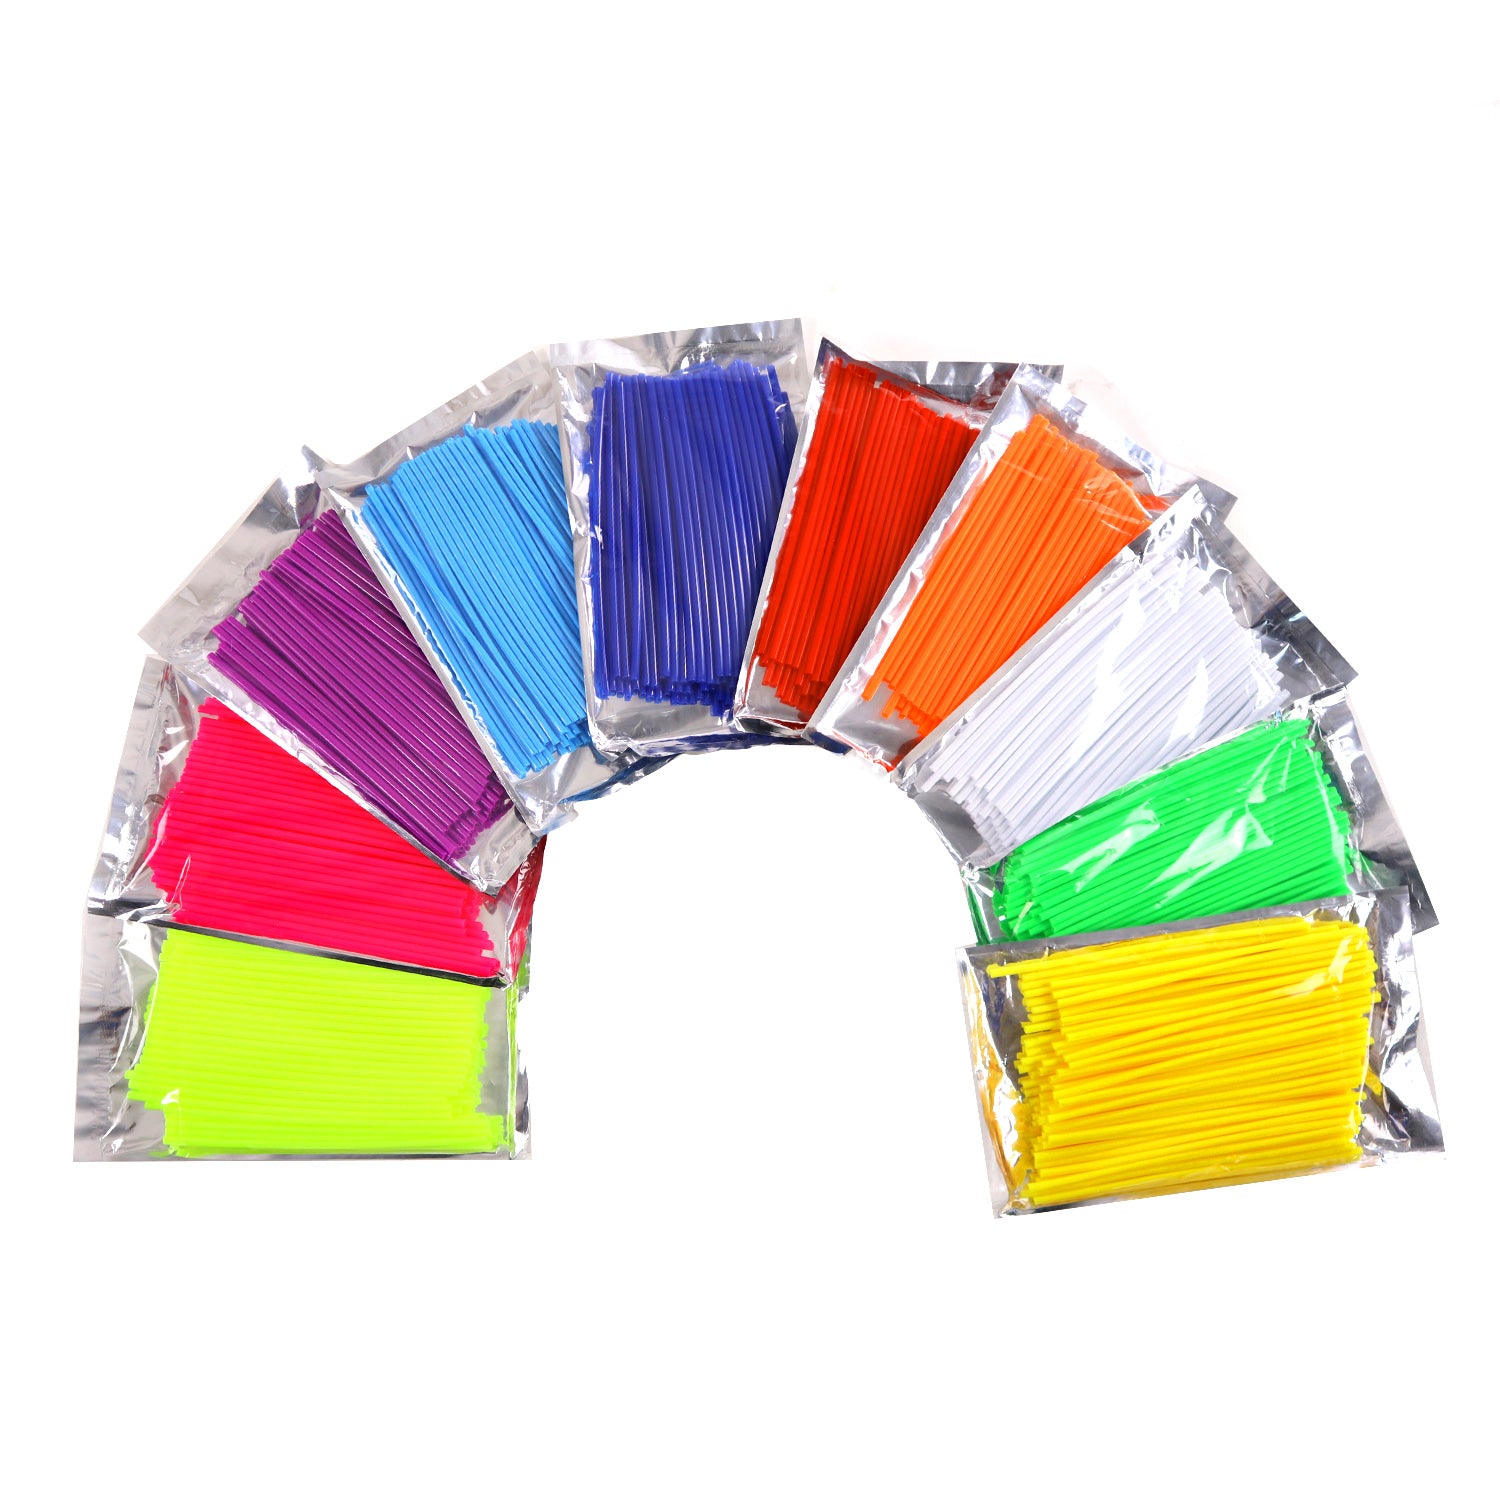 Spoke Covers - Multi Color